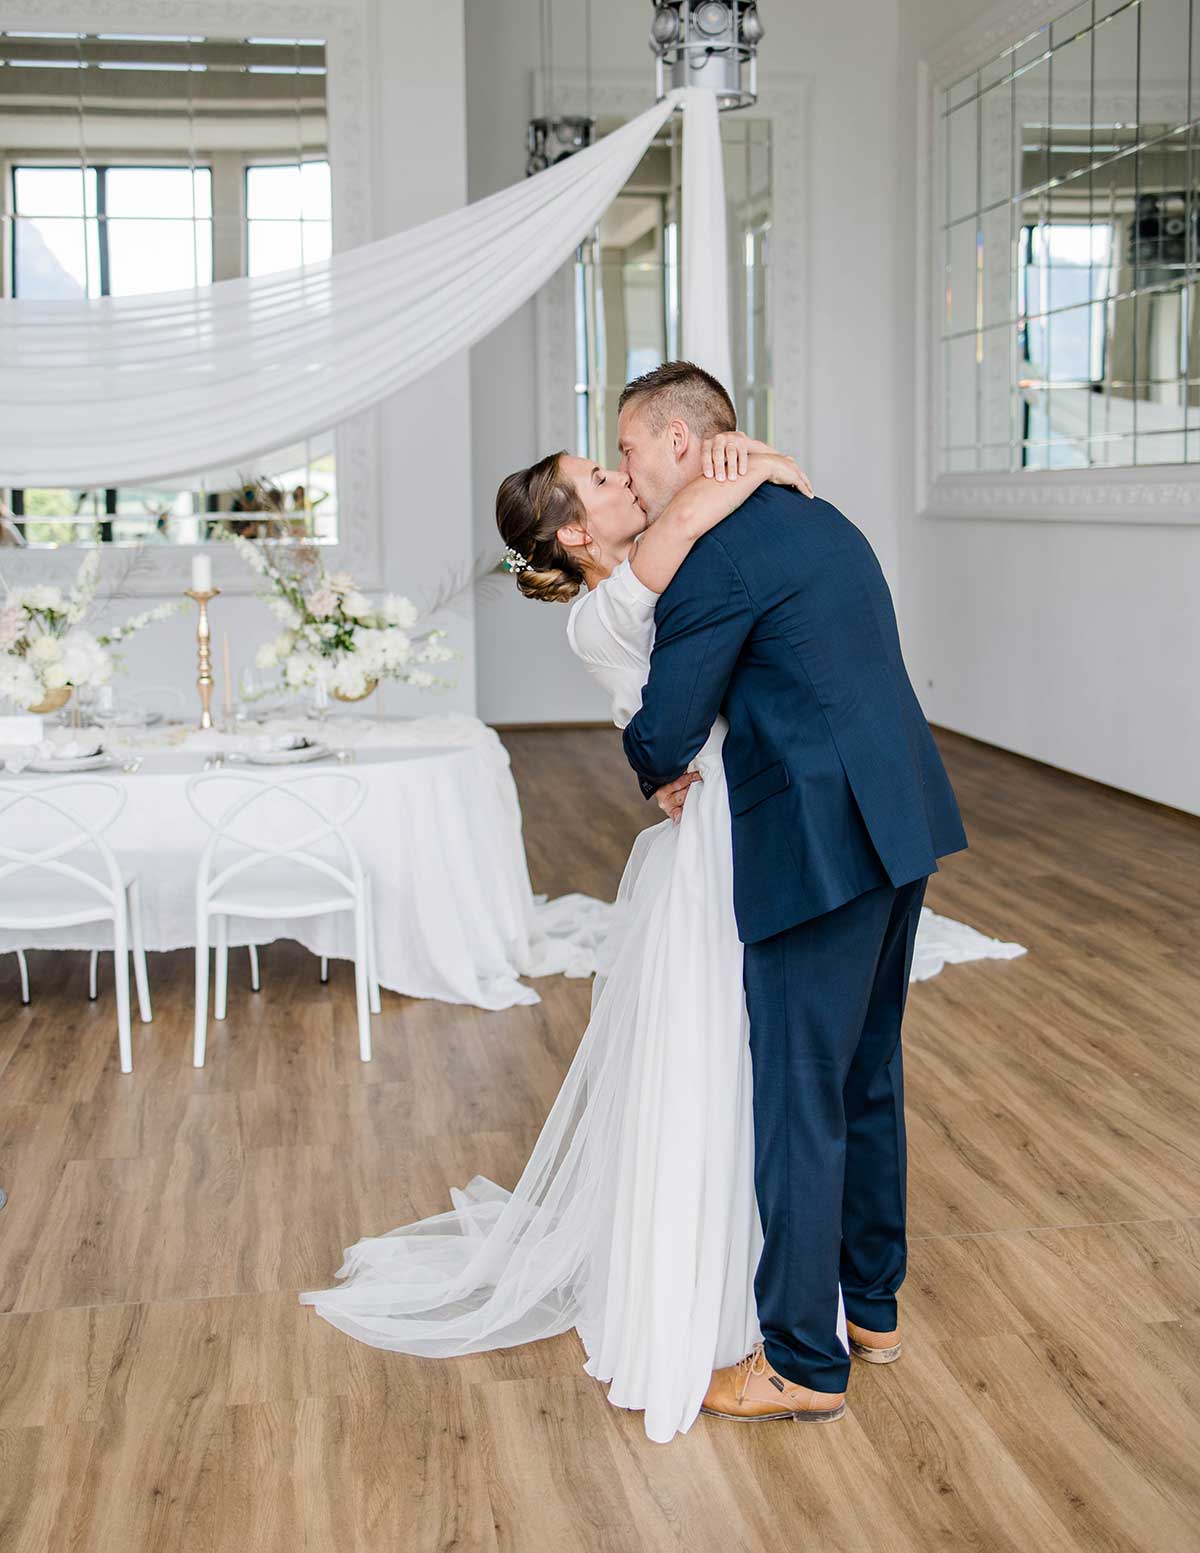 Küssendes Brautpaar vor dem eingedeckten Hochzeitstisch